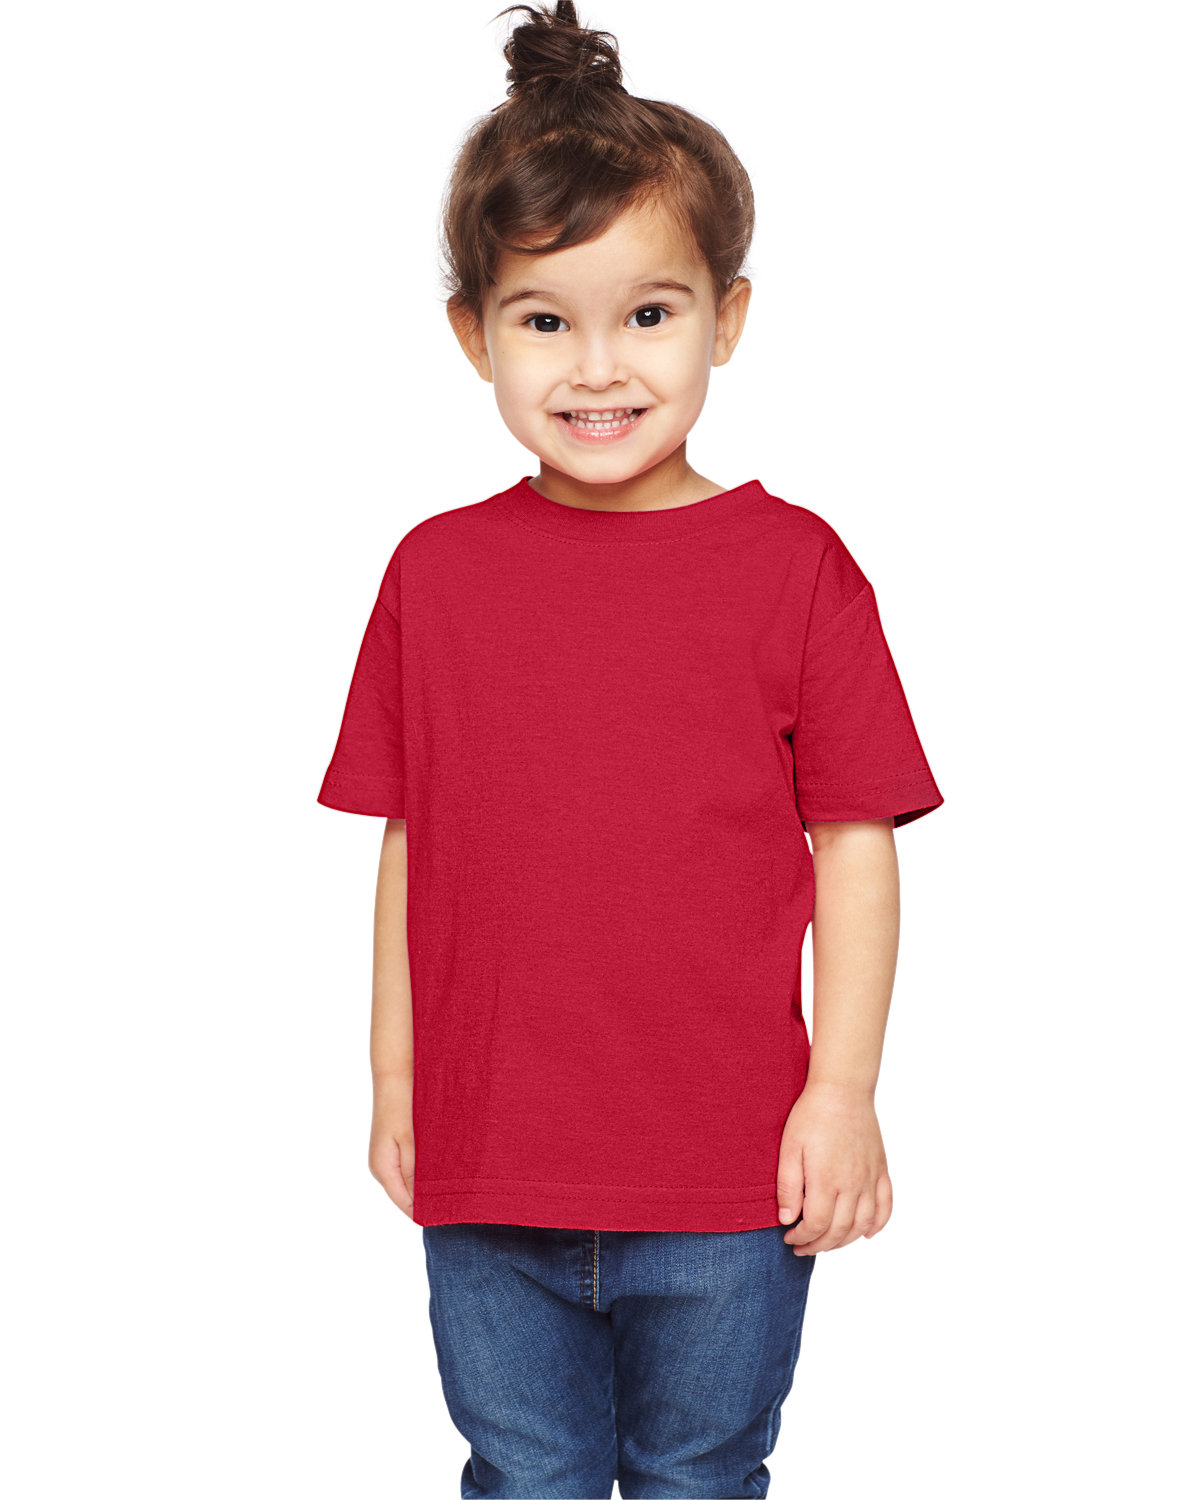 Rabbit Skins Toddler Fine Jersey T-Shirt VINTAGE RED 